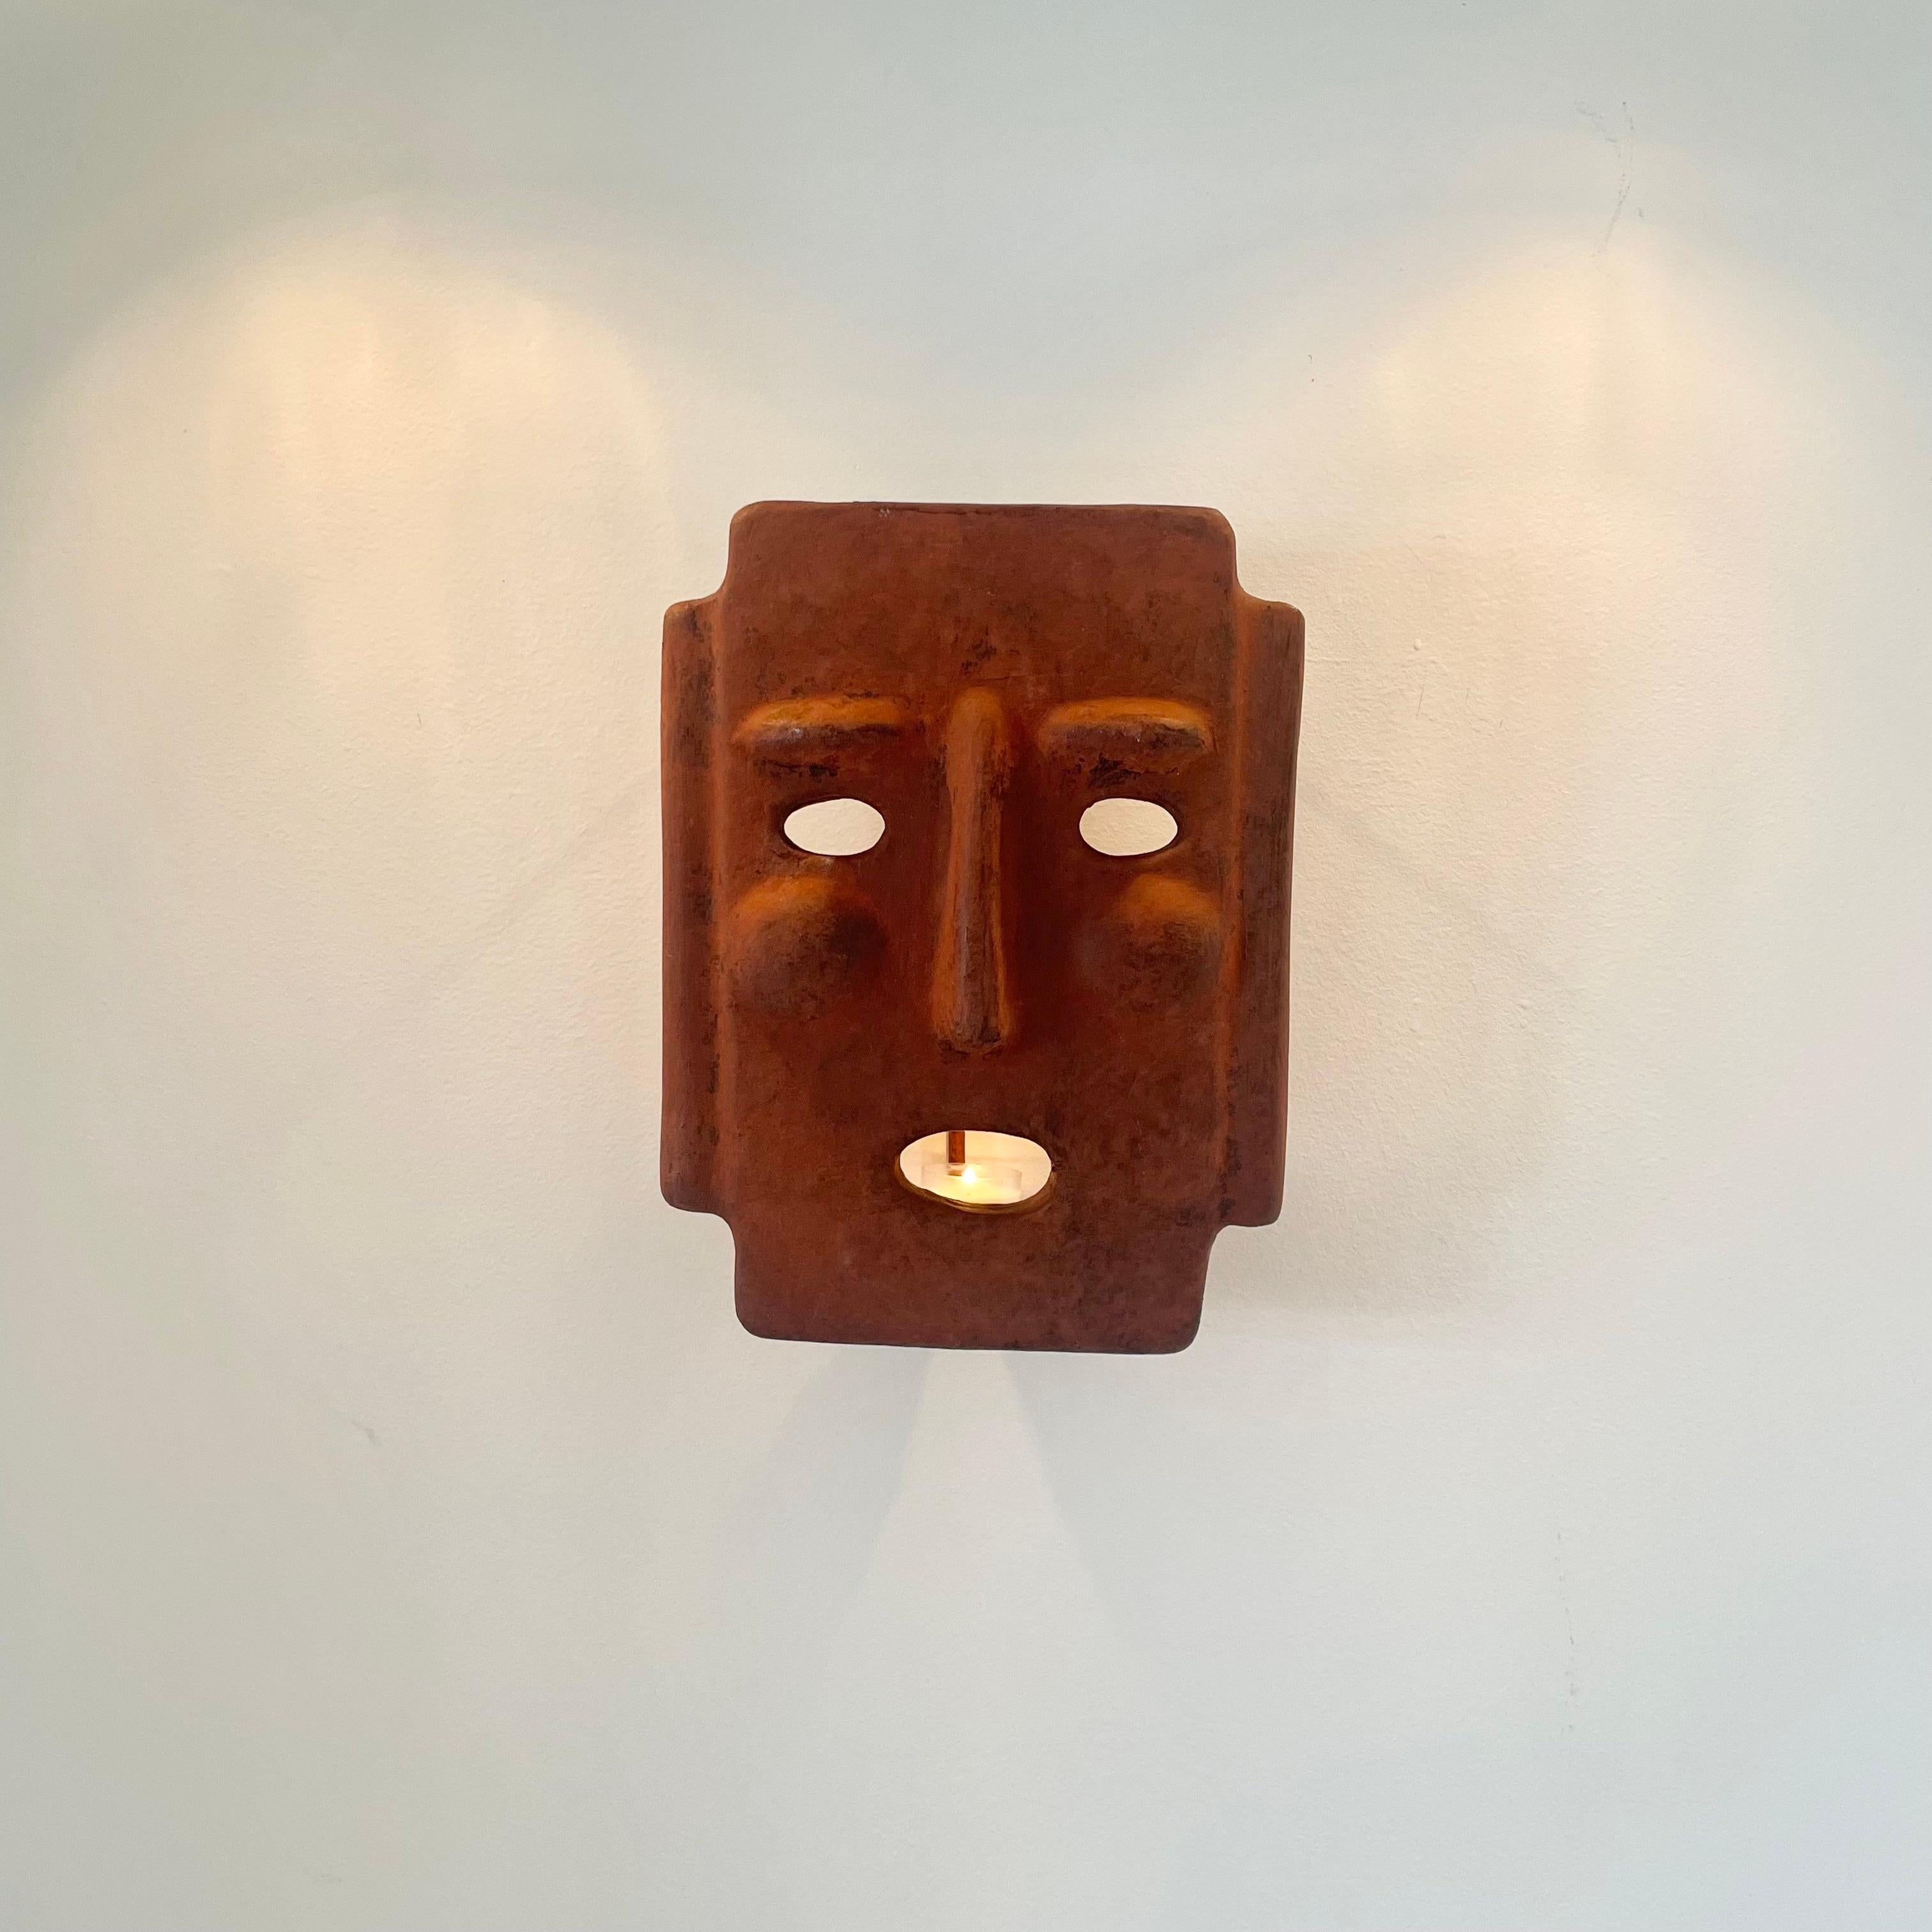 Fantastique applique de bougie sculpturale en forme de masque en argile, fabriquée en Italie. Fabriqué à la main dans une couleur adobe vieillie avec un emplacement pour une seule bougie à l'intérieur. Le masque est doté d'un cadre en métal qui